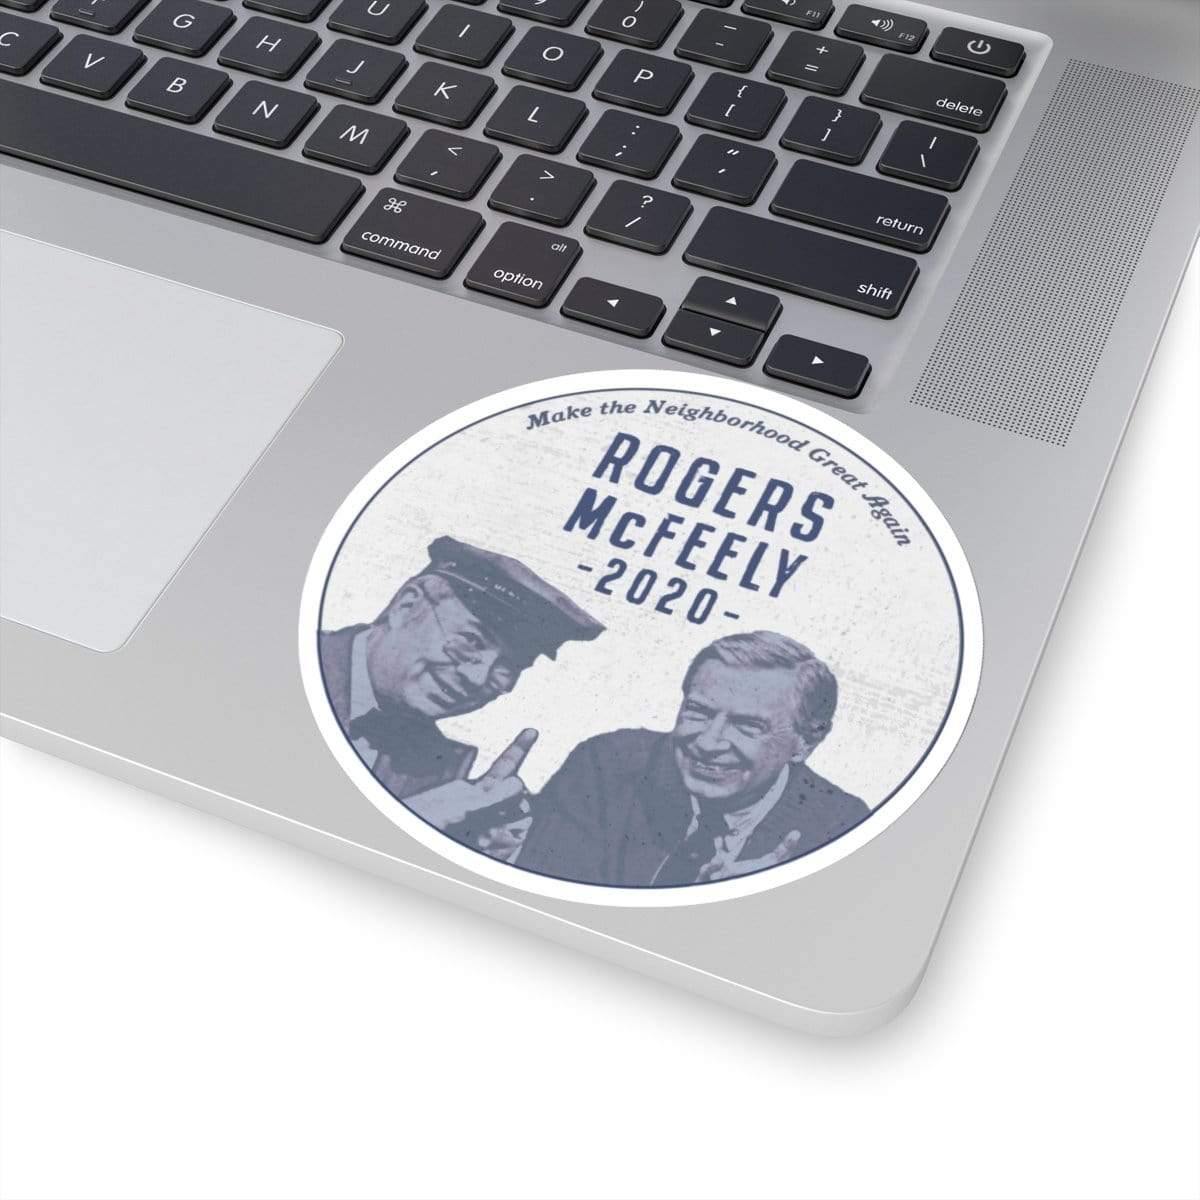 "Rogers/McFeely 2020" Kiss-Cut Stickers - True Blue Gear